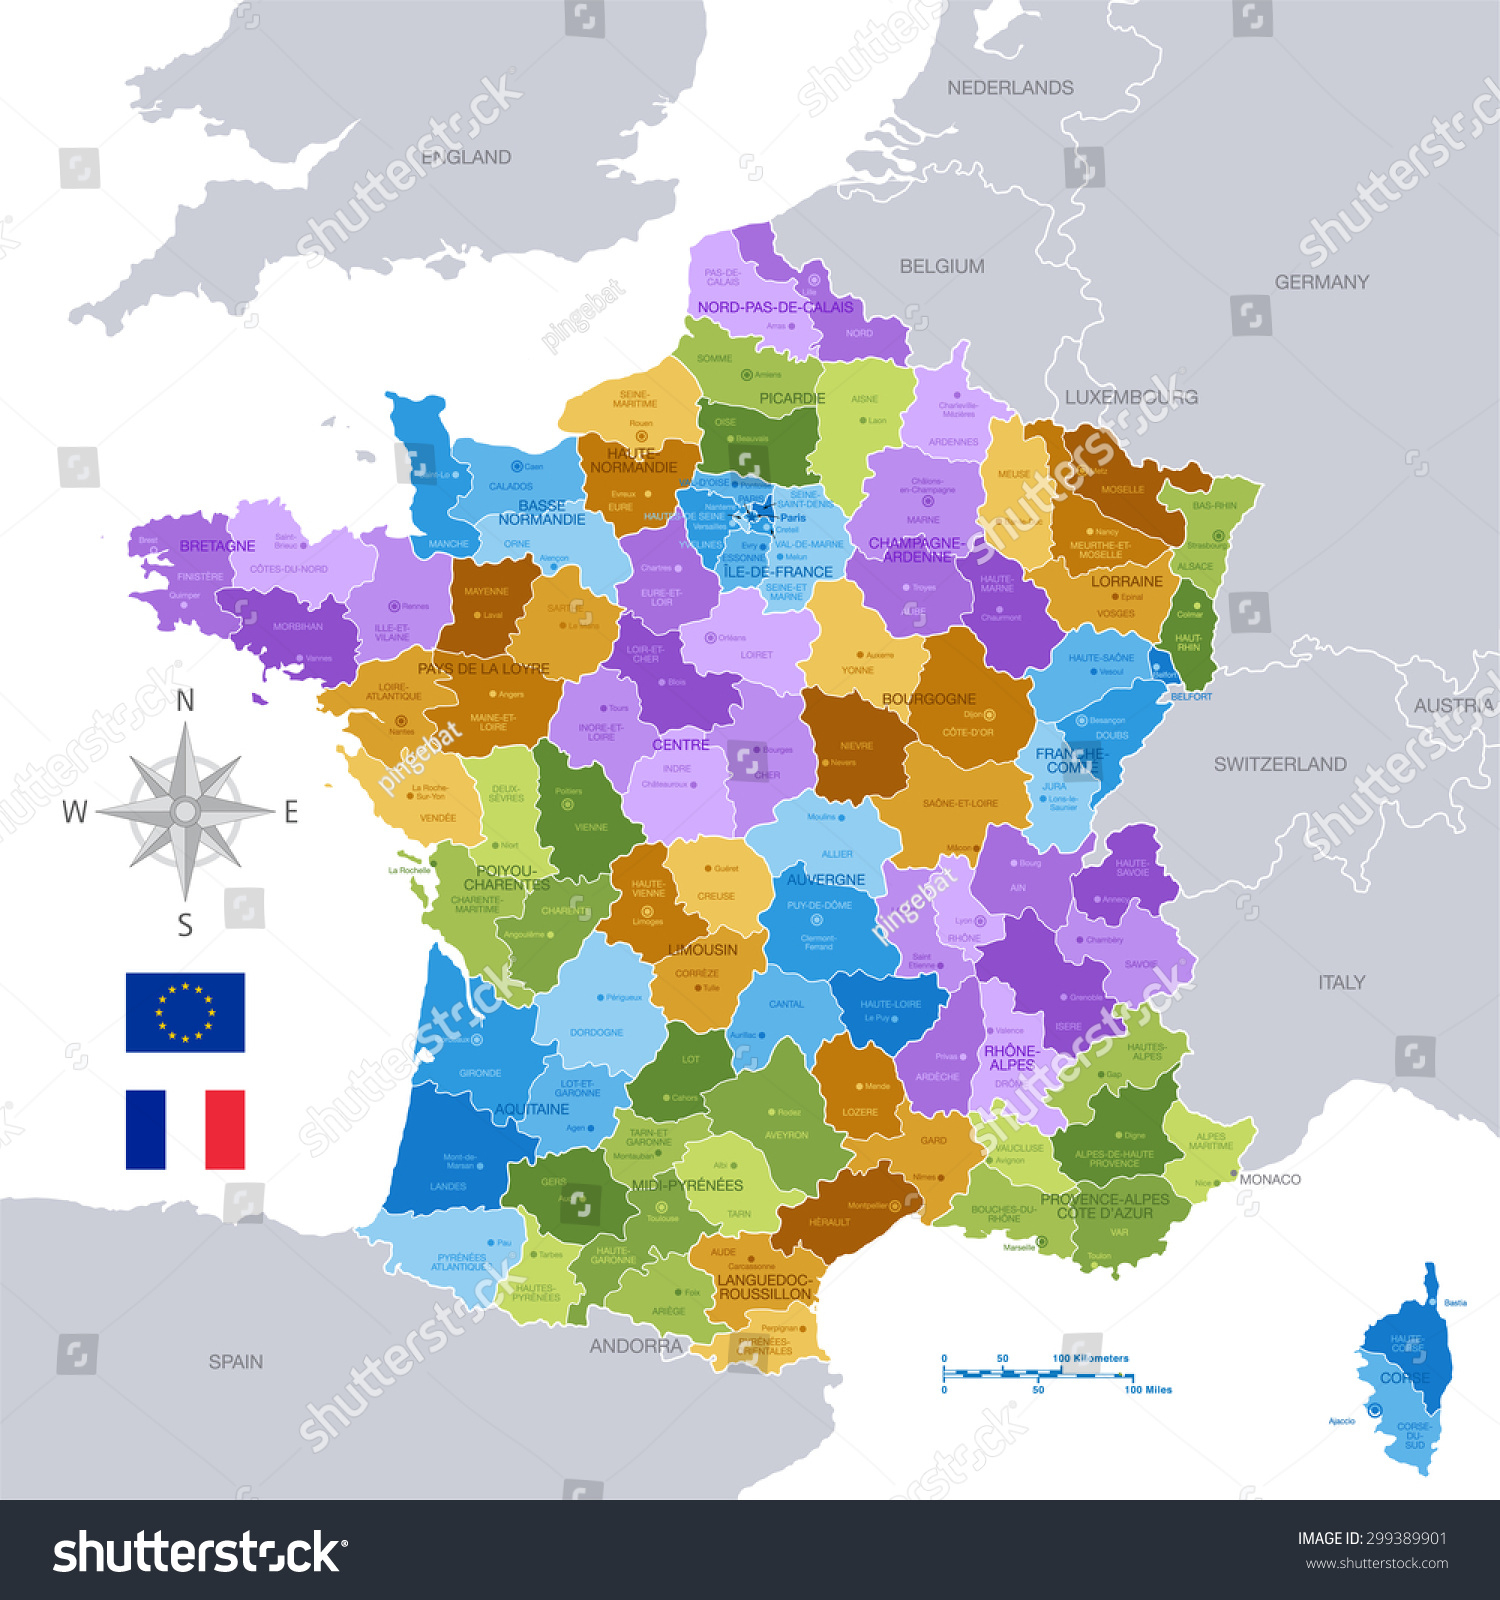 Image Vectorielle De Stock De Une Carte Vectorielle concernant Carte Des Villes De France Détaillée 